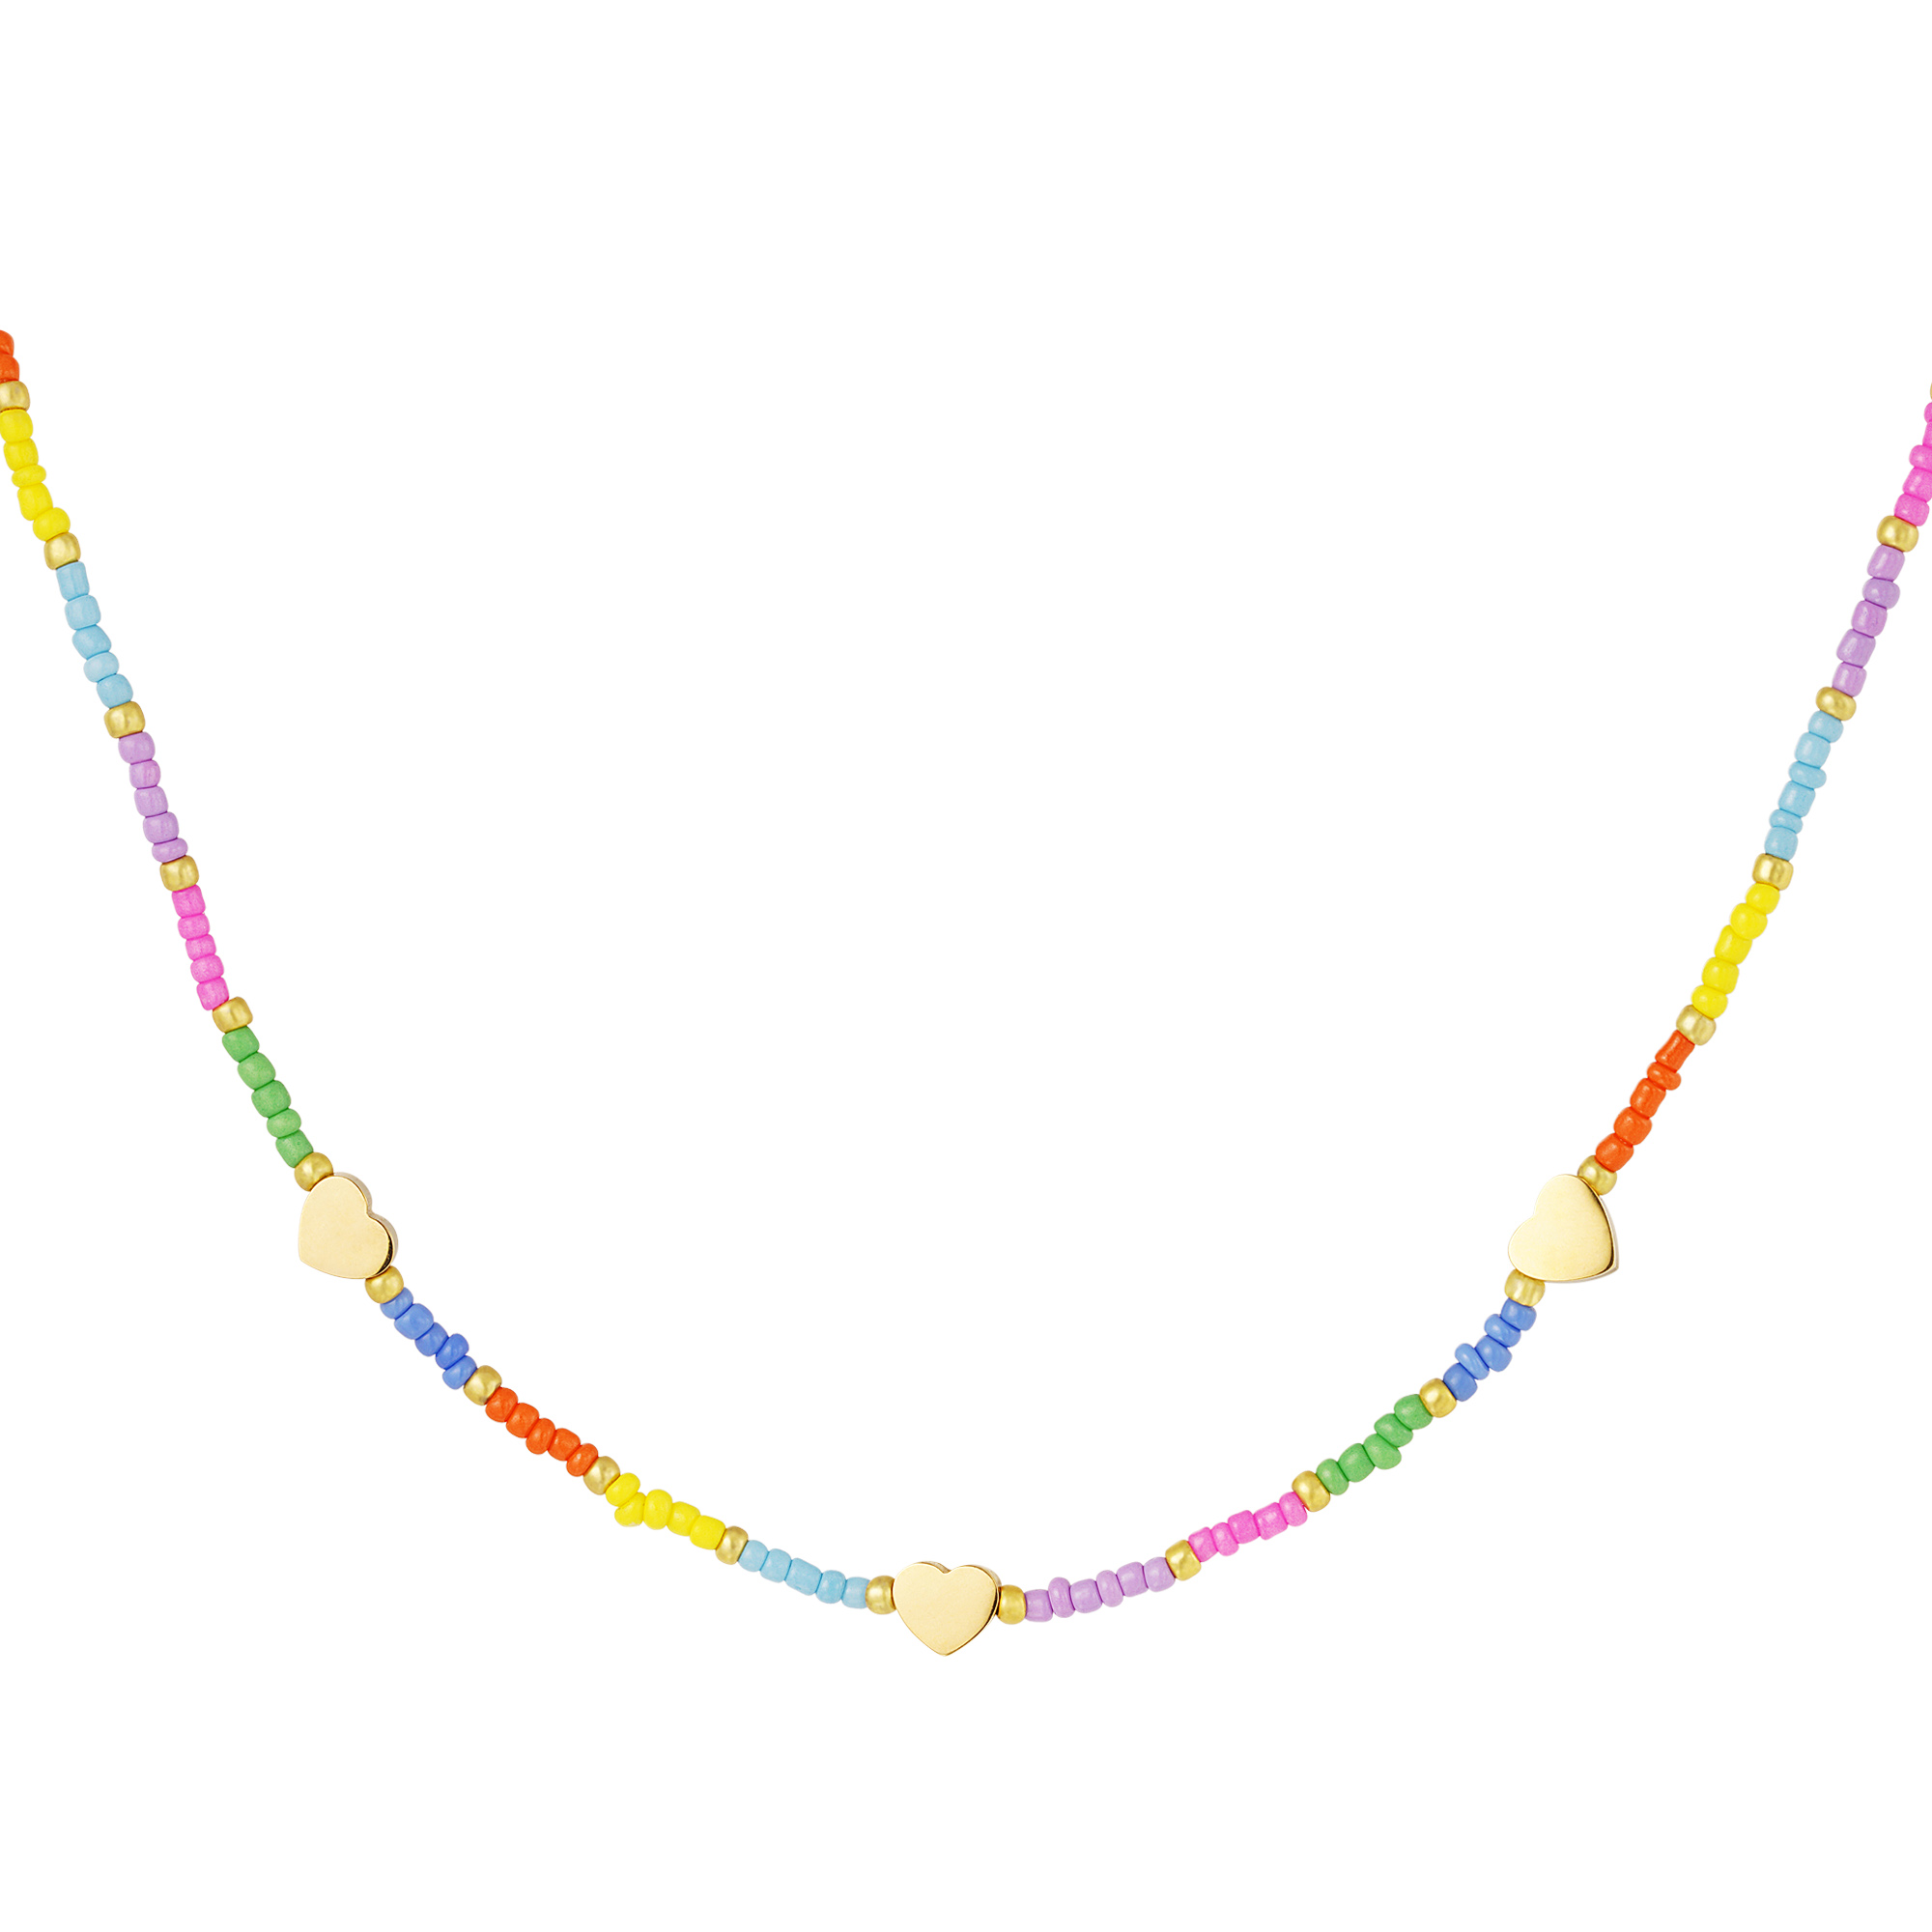 Halskette mit goldenen herzen - rainbow-kollektion